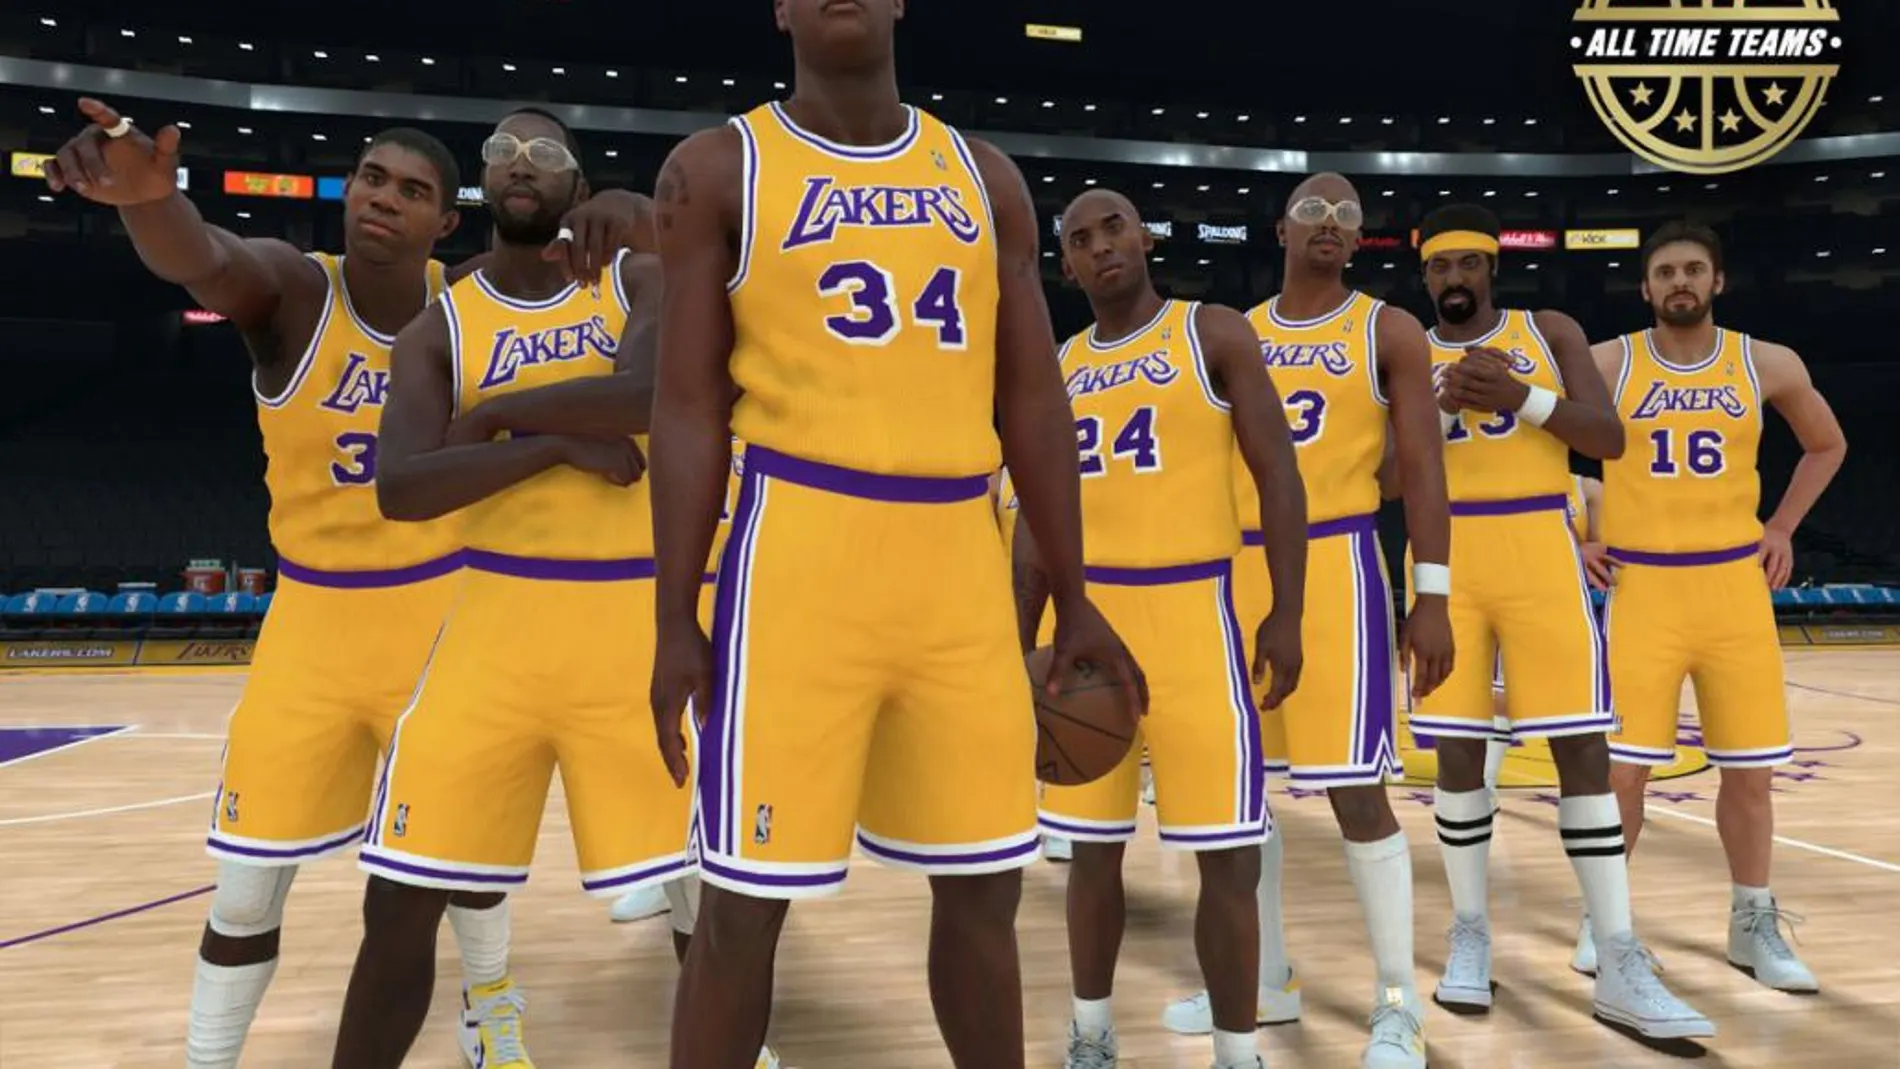 Análisis - NBA 2K18: La simulación deportiva a un nuevo nivel